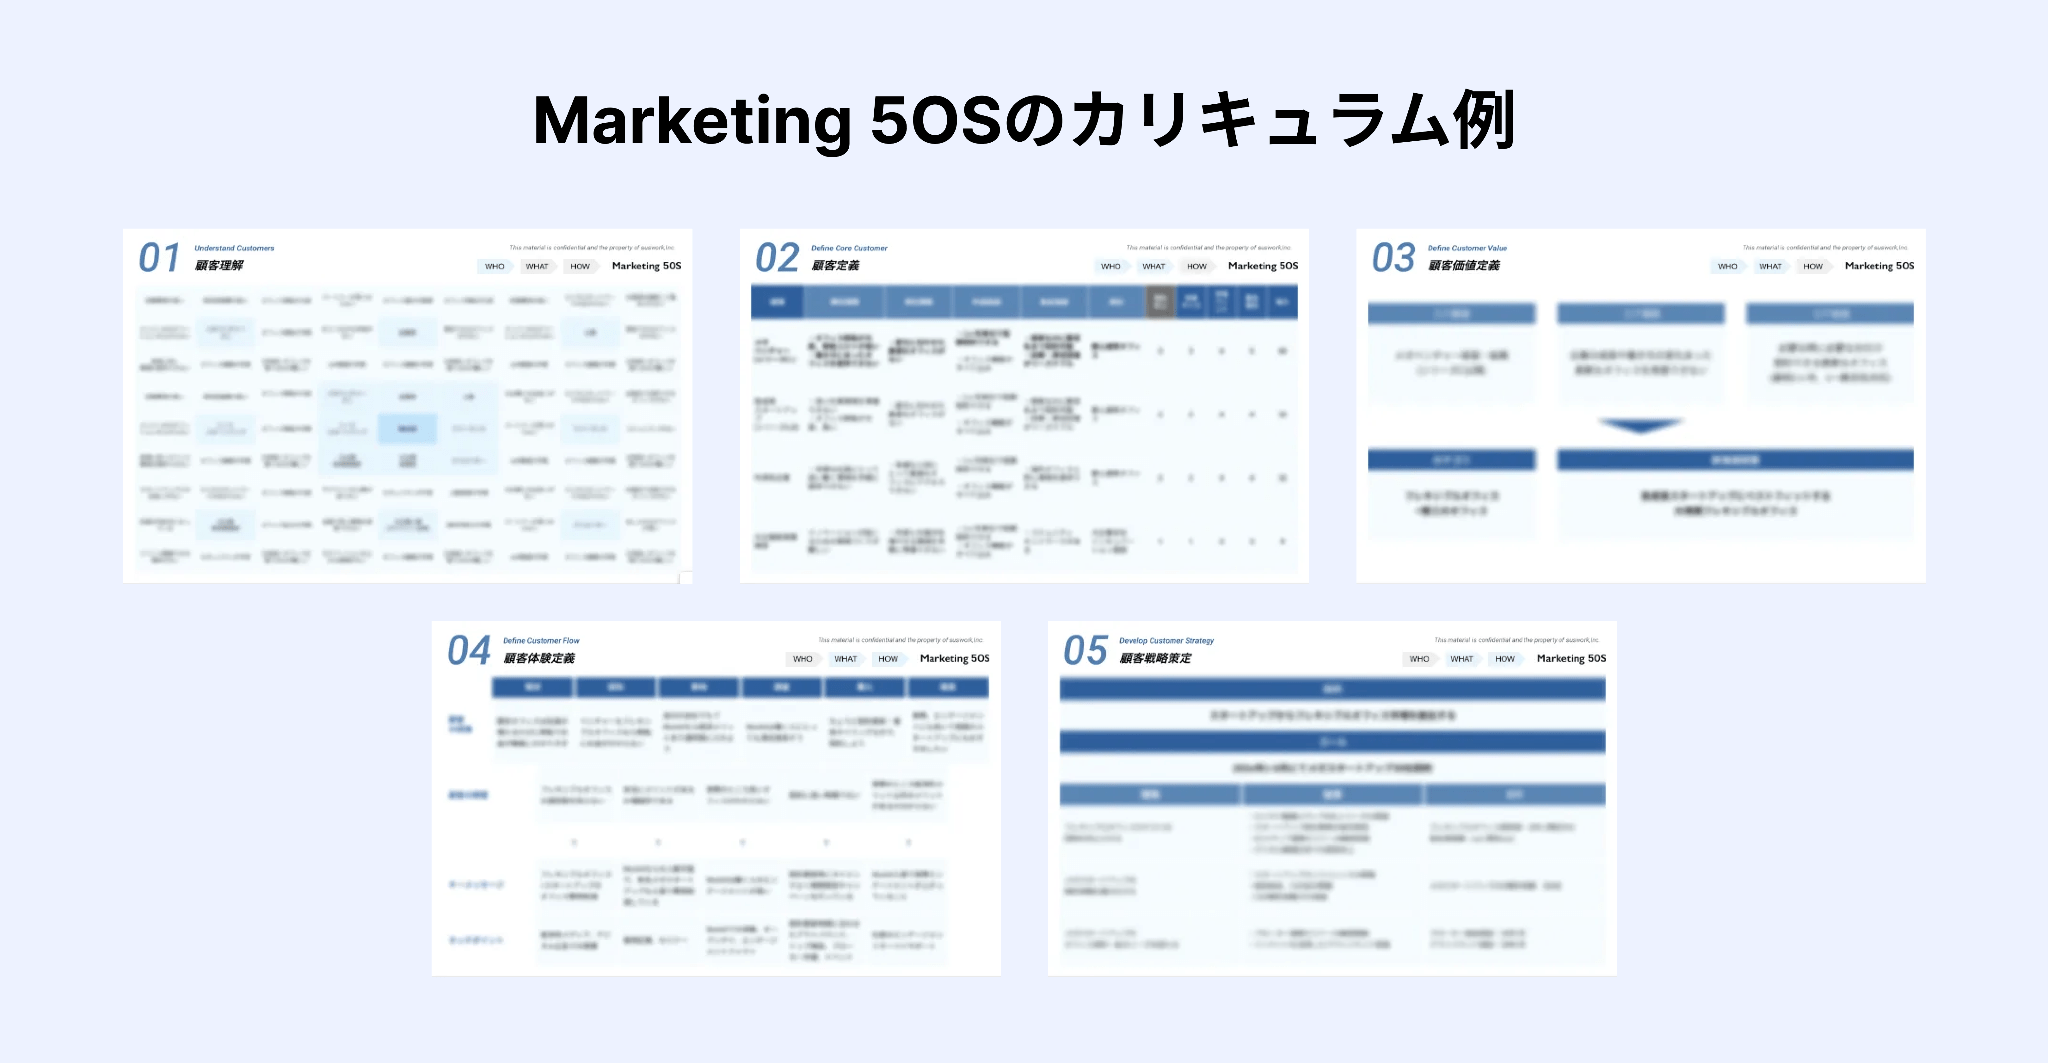 マーケティング戦略 実践型研修プログラム「Marketing 5OS」のカリキュラム例